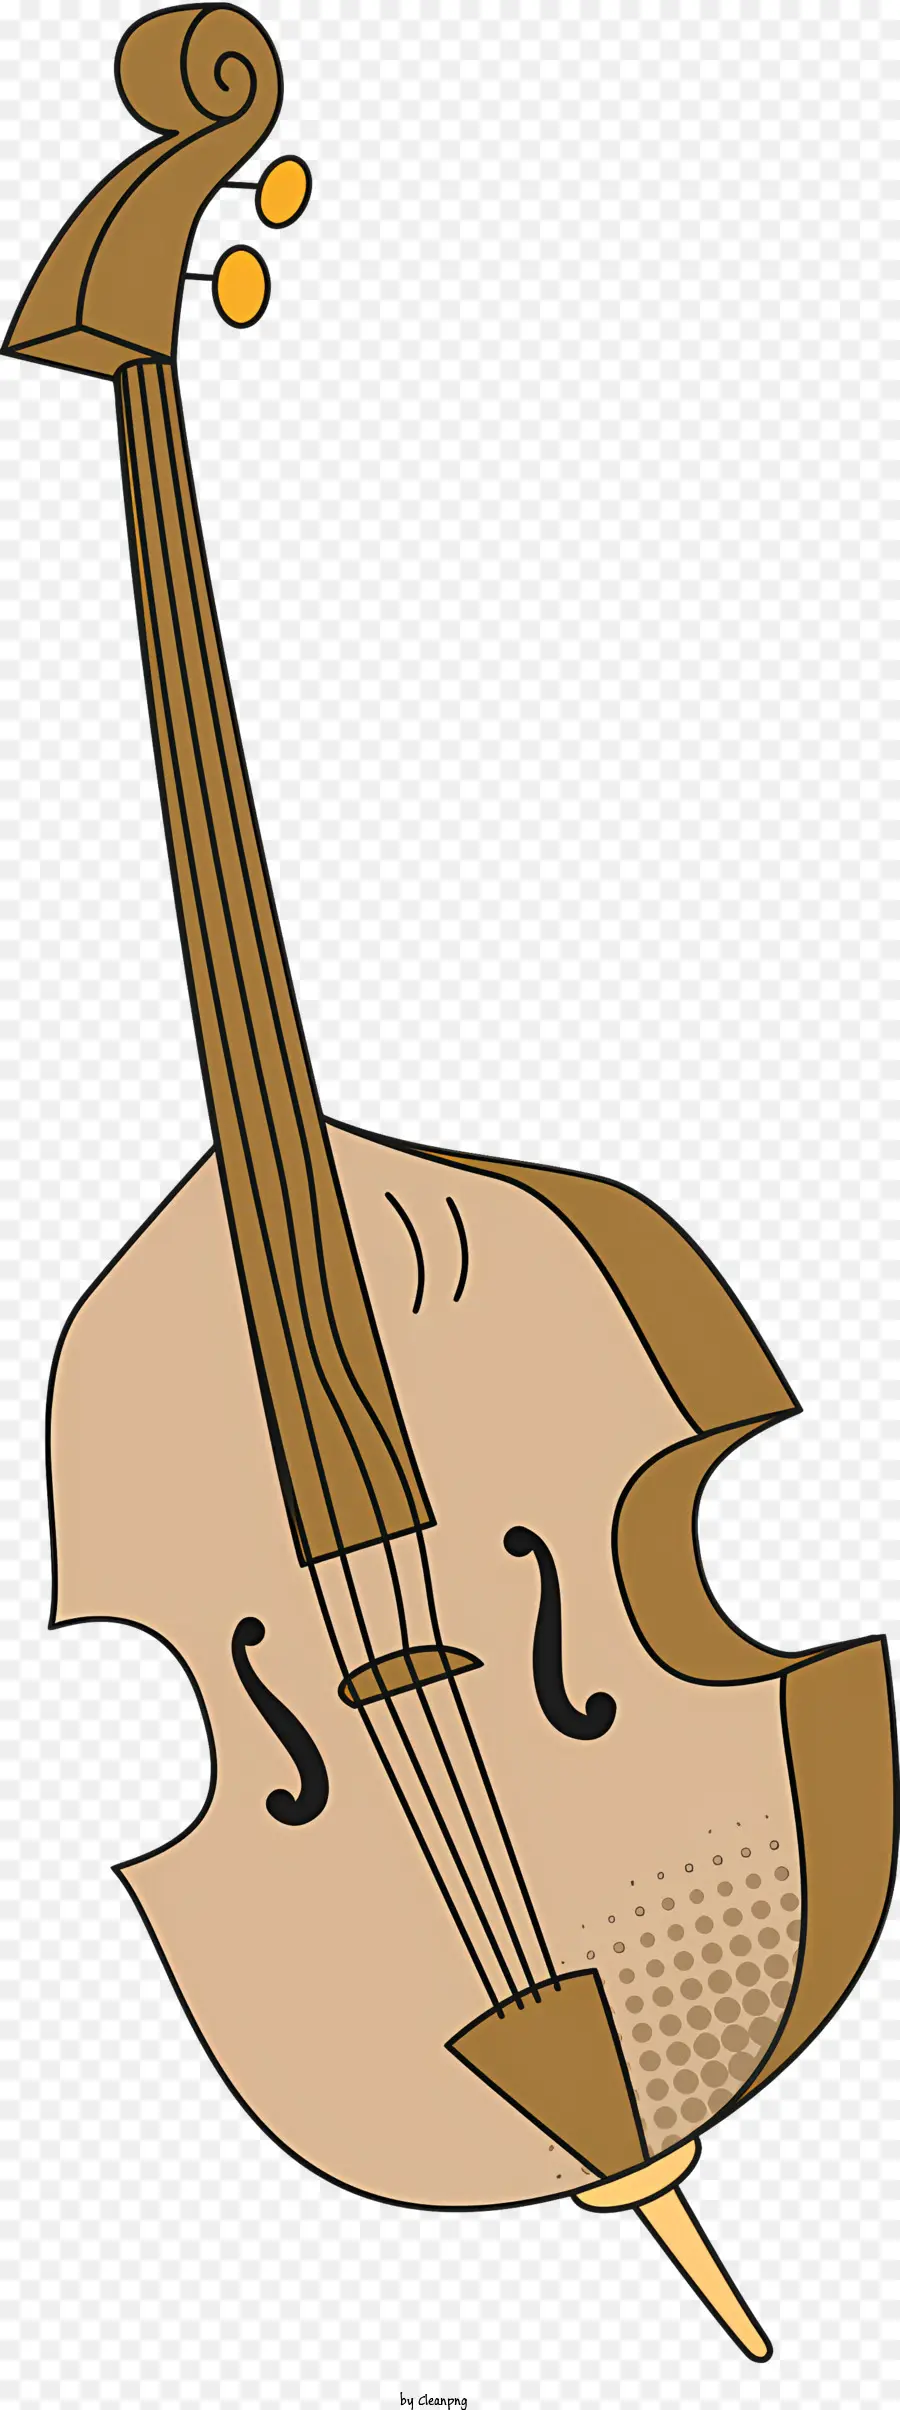 icon Strumento a violoncello Strumento a prua - Disegno di violoncello con quattro corde e prua